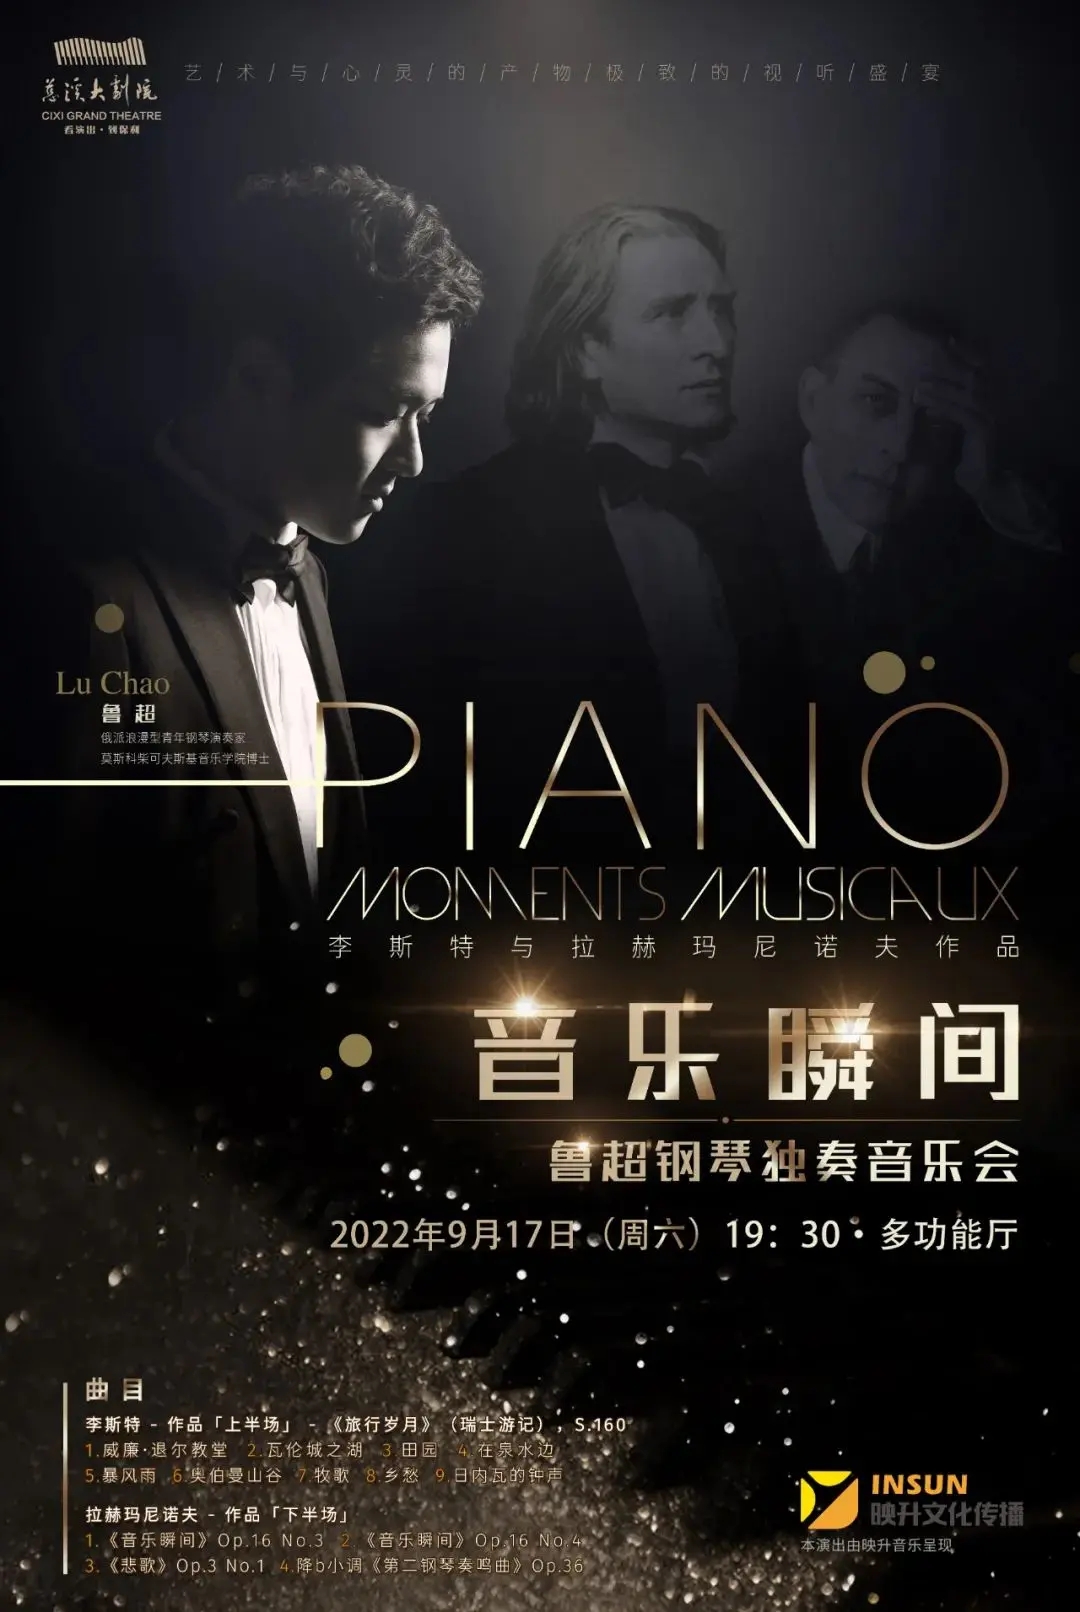 【慈溪】2022市民音乐会《音乐瞬间鲁超钢琴独奏音乐会》